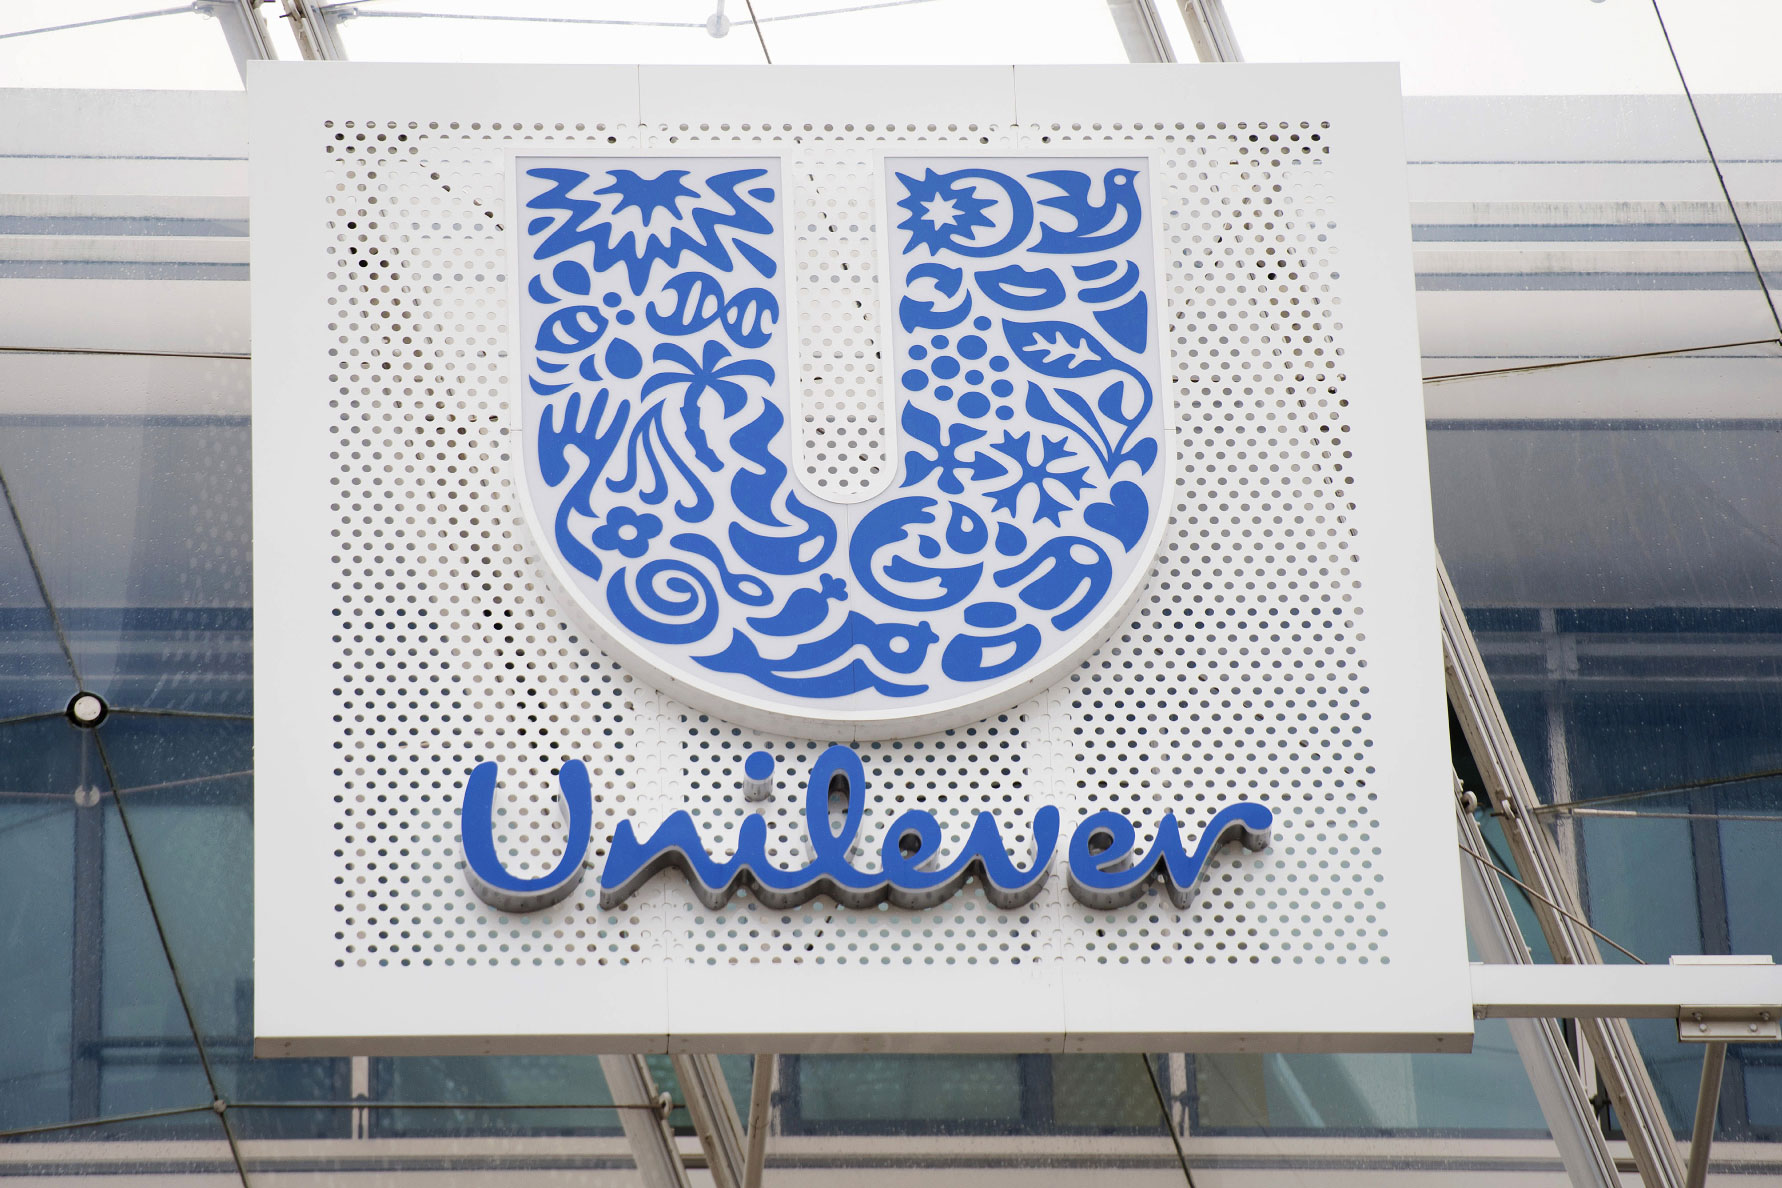 Unilever-ի տուփերի վրայից կհանվեն «բաց» և «սպիտակ» բառերը